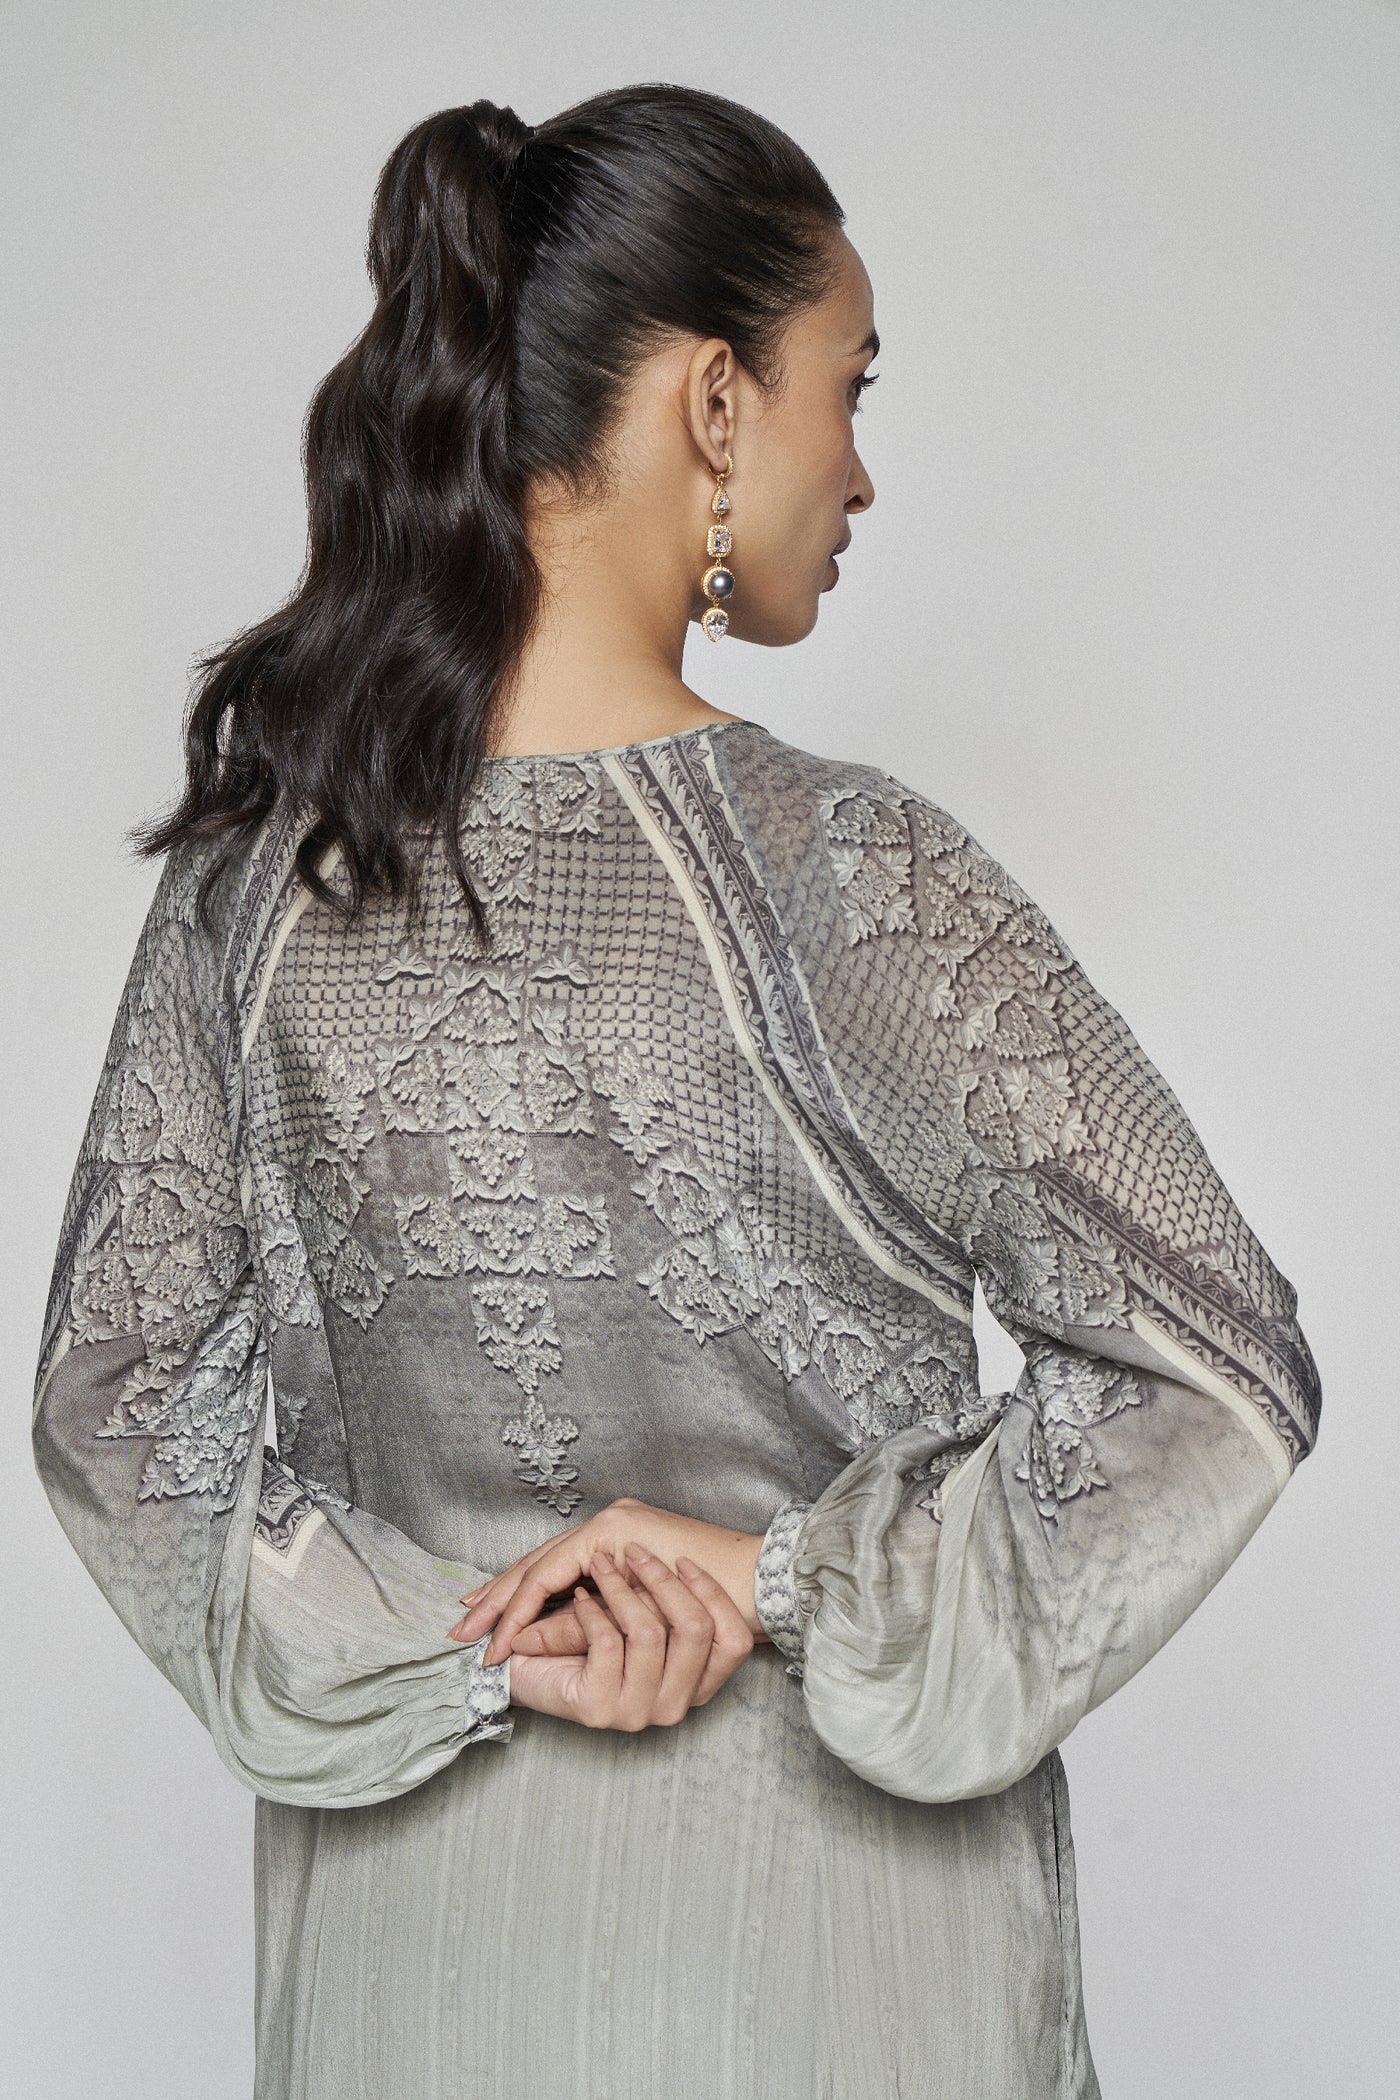 Anita Dongre Daphne Dress Grey indian designer wear online shopping melange singapore